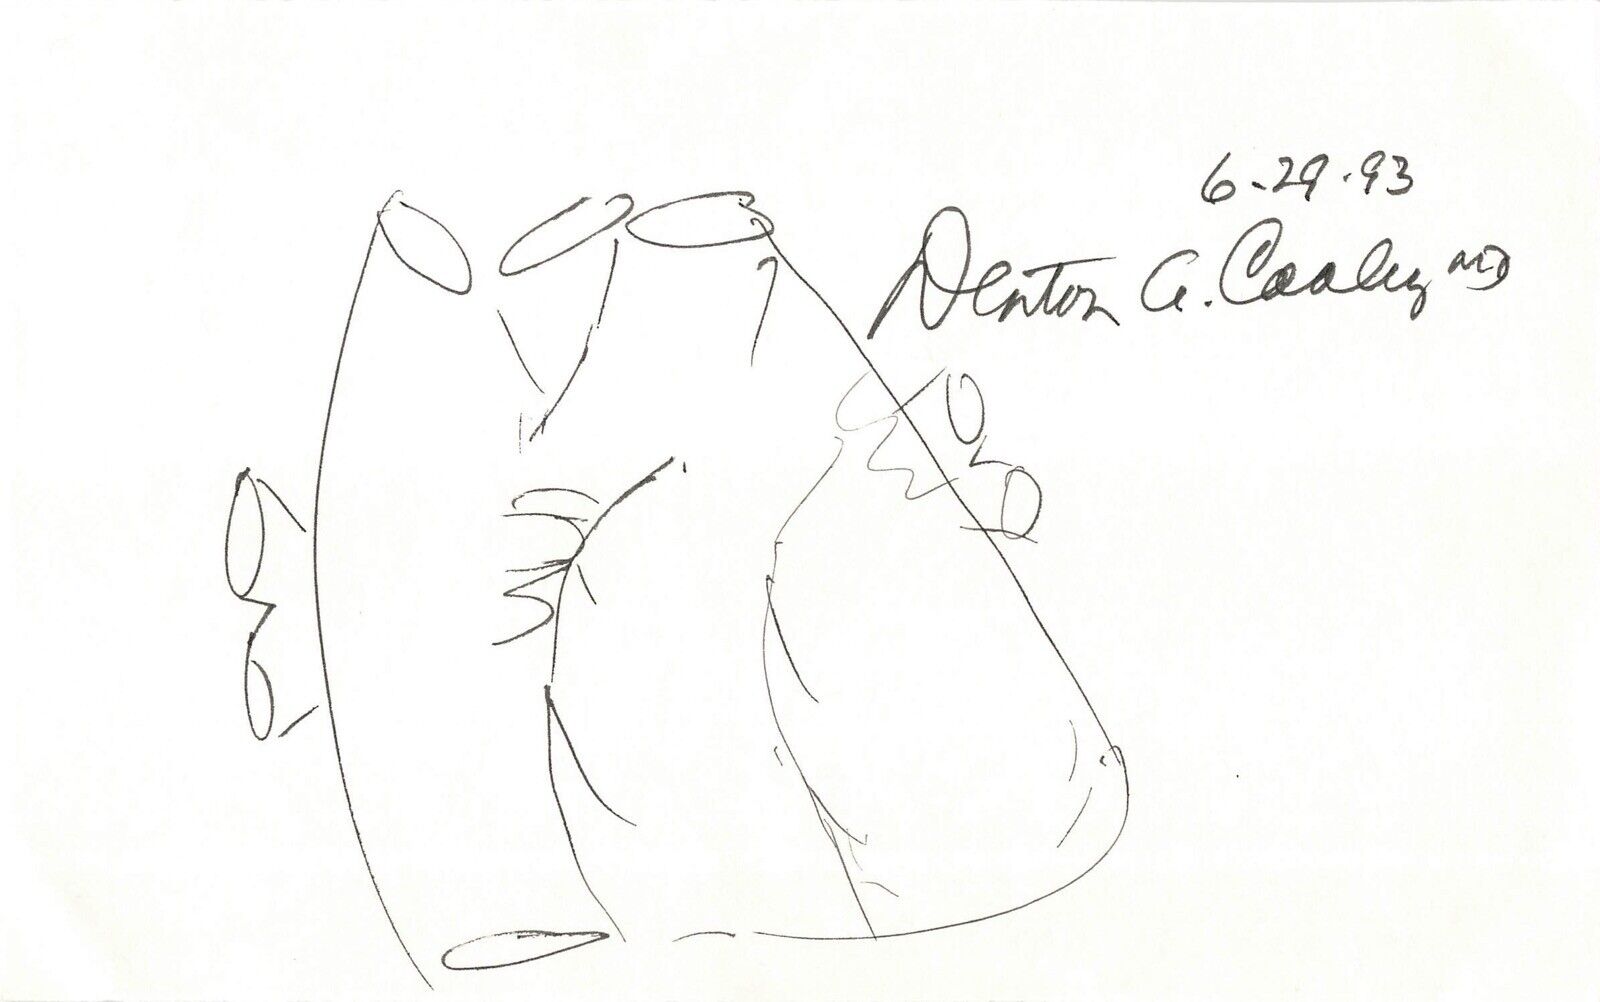 Denton Cooley Heart Surgeon Signed Autograph 8 x 5 Sketch Cut PSA DNA j2f1c